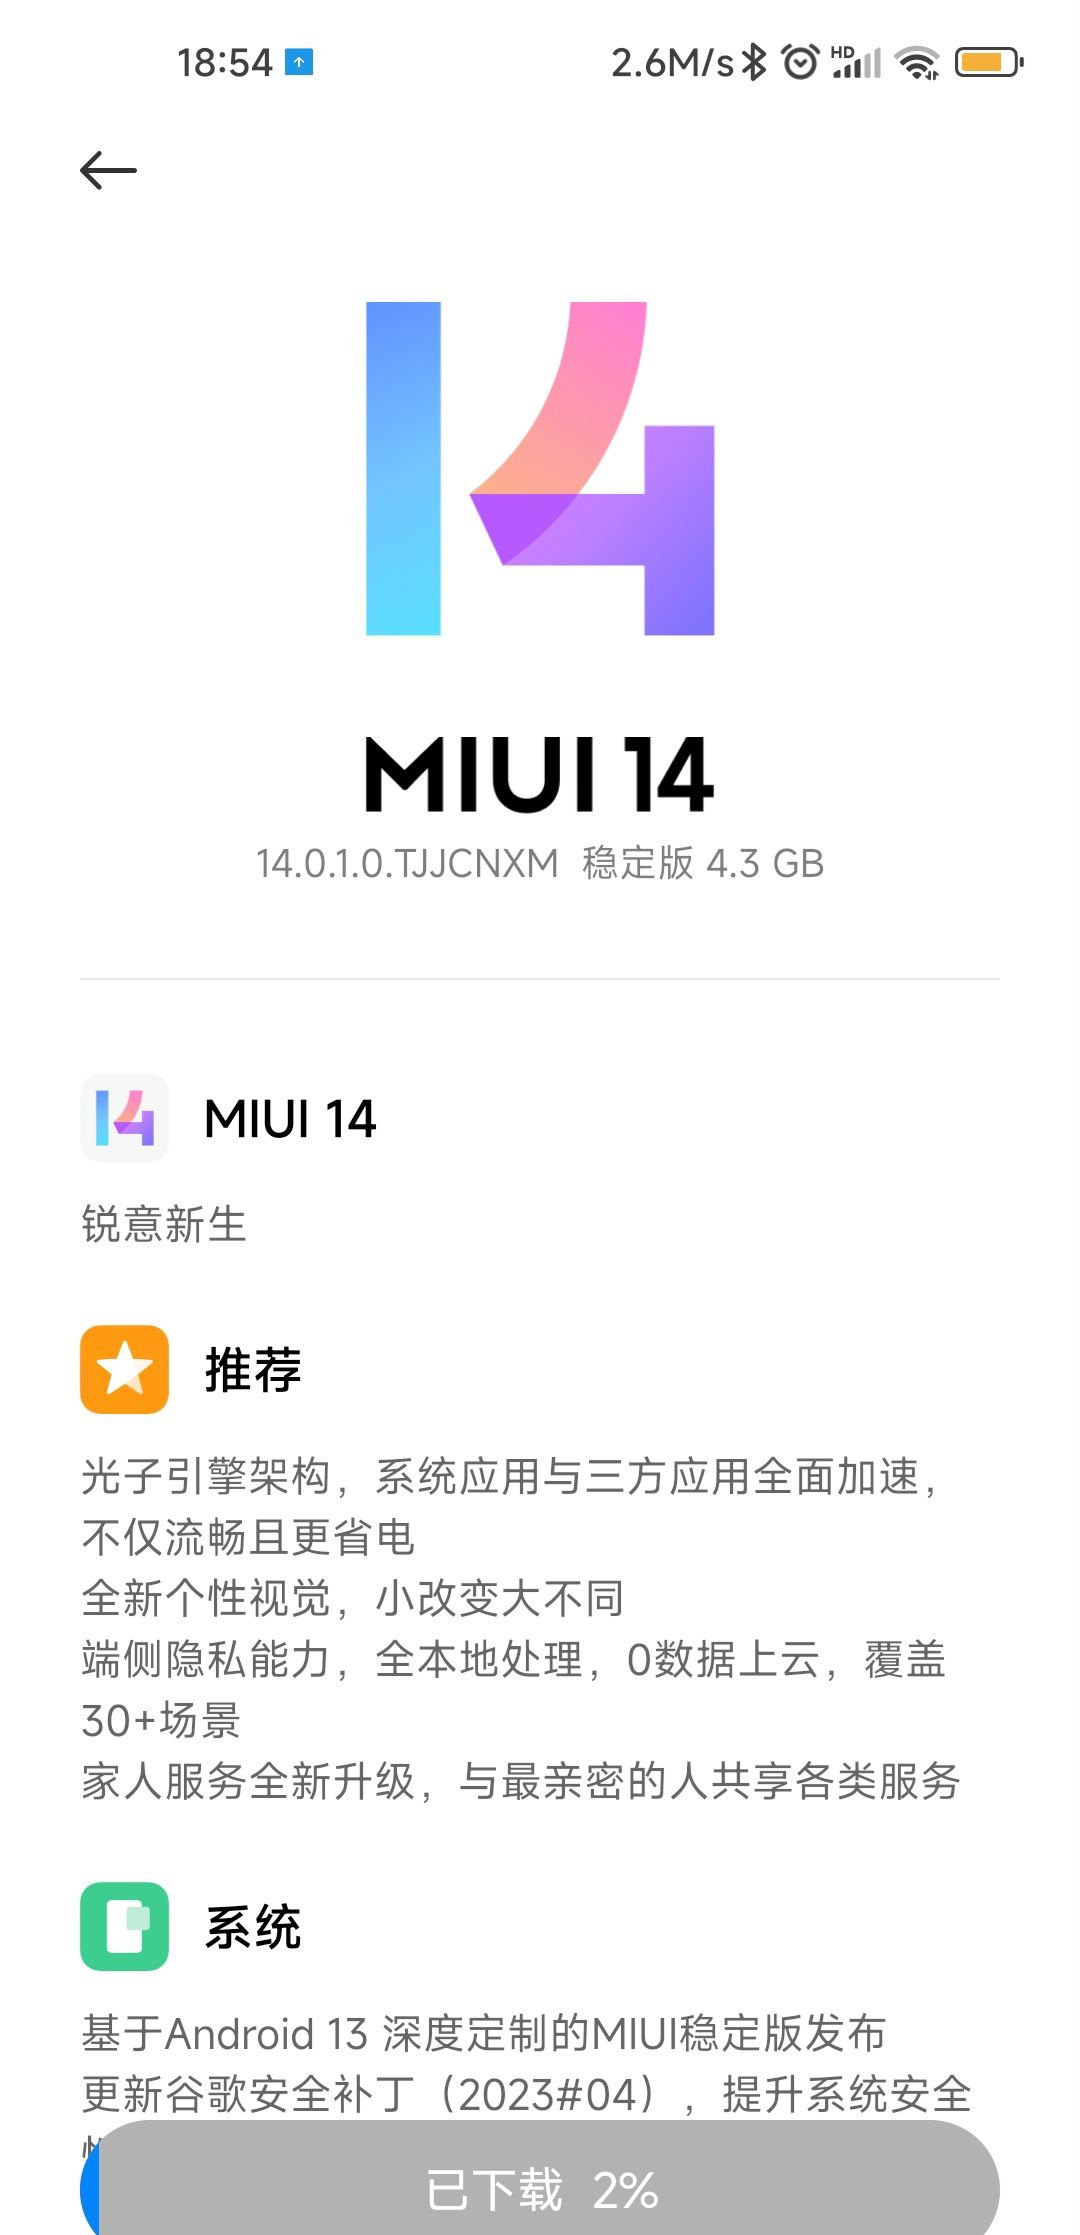 小米 10 至尊纪念版手机开始推送 MIUI 14 稳定版